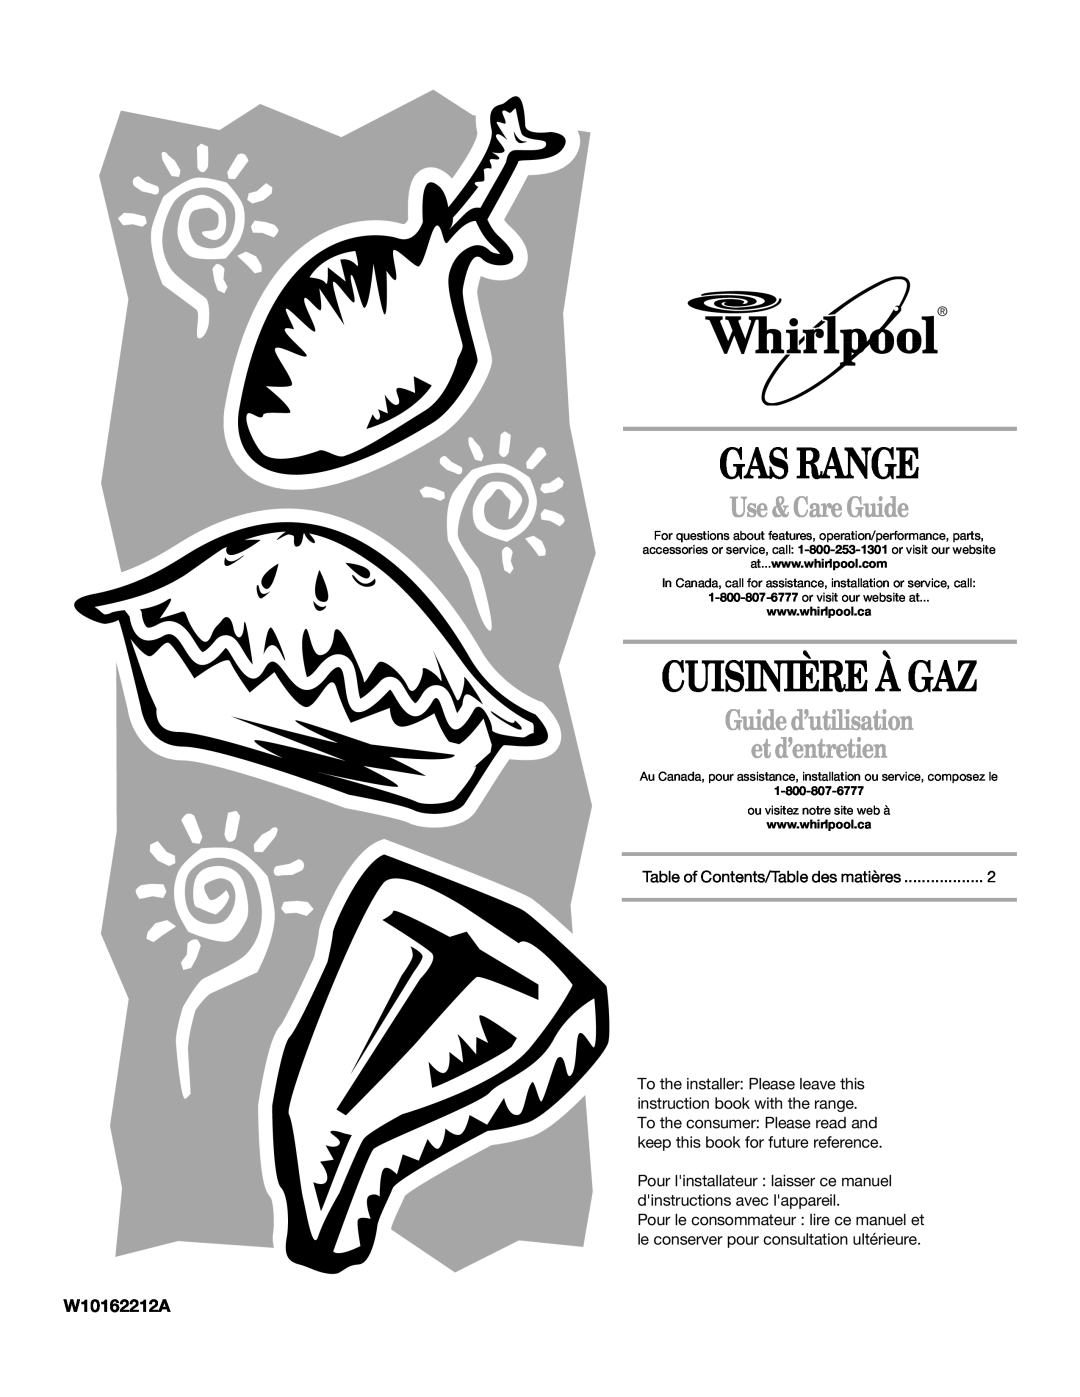 Whirlpool W10162212A manual Gas Range, Cuisinière À Gaz, Use & Care Guide, Guide d’utilisation et d’entretien 